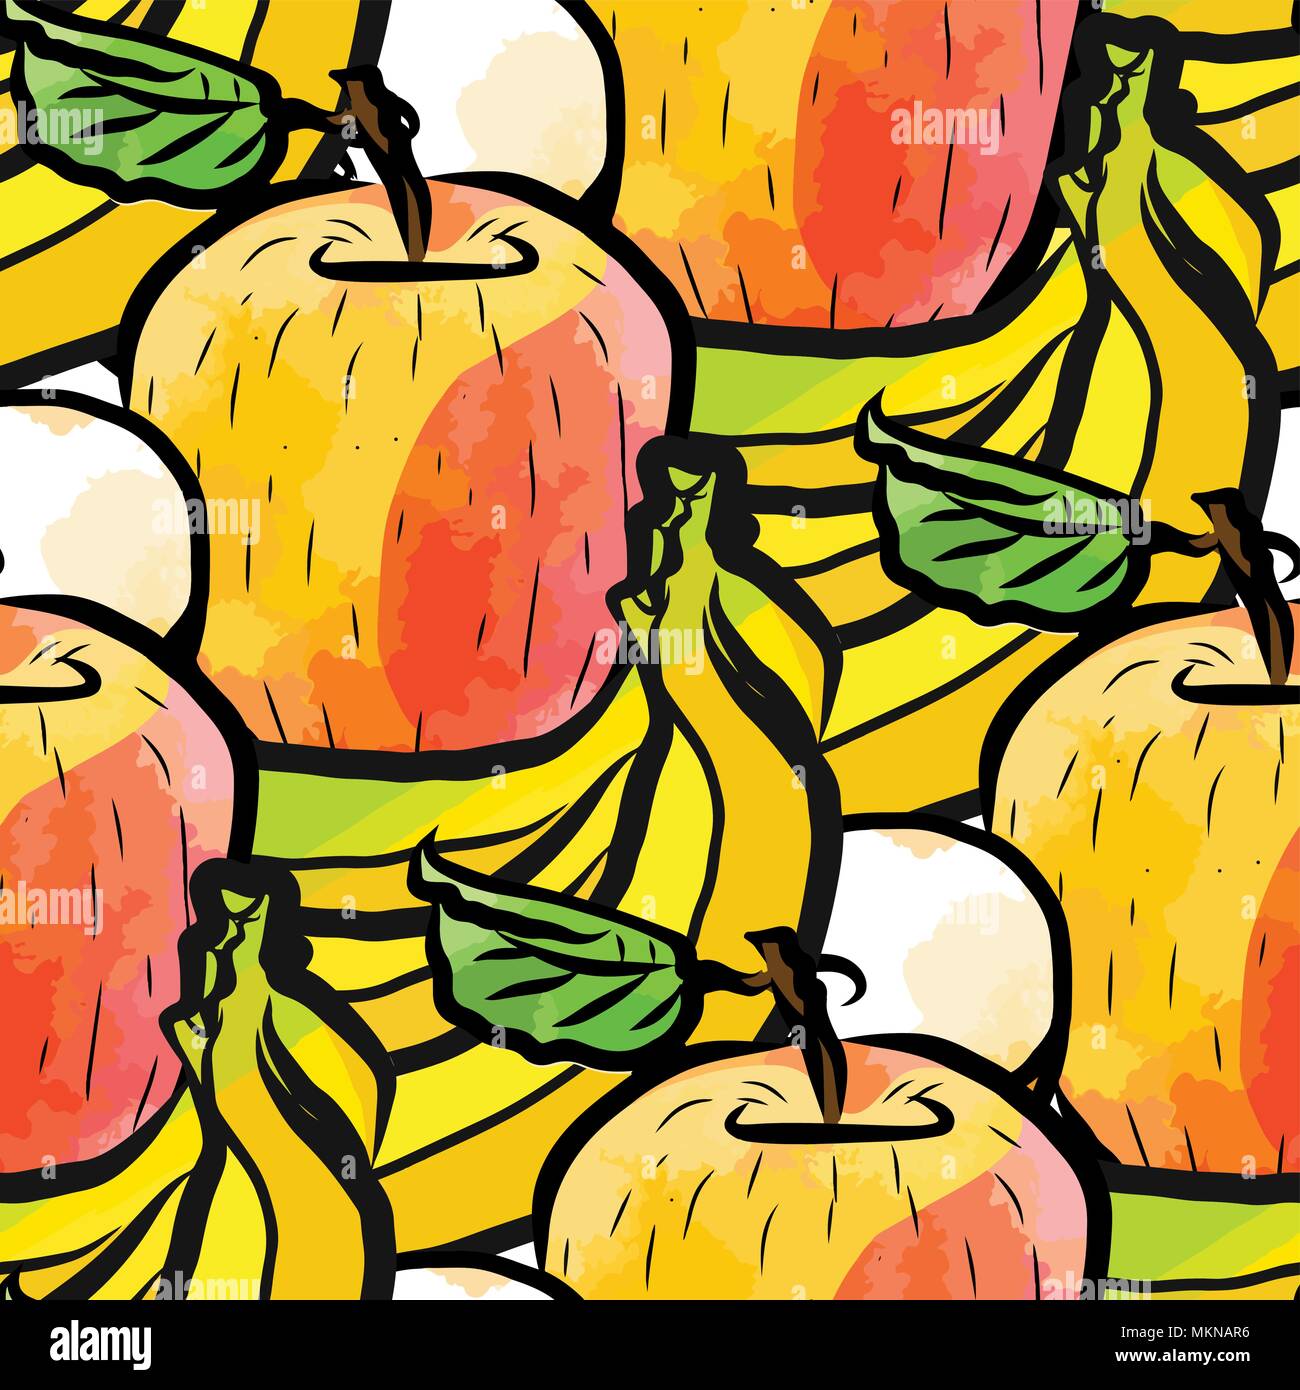 Vektor nahtlose Muster von Bananen und Äpfel. Von Hand gezeichnet und farbige Abbildung Stock Vektor